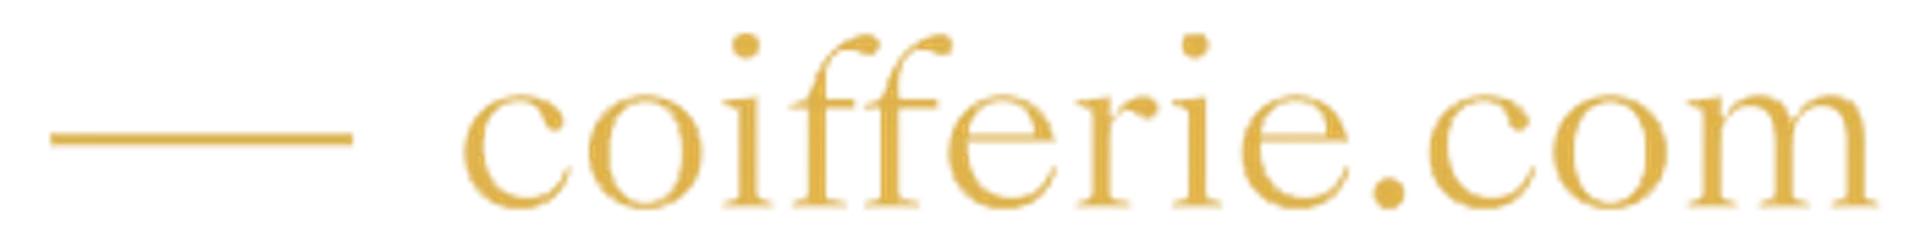 COIFFERIE logo de circulaire